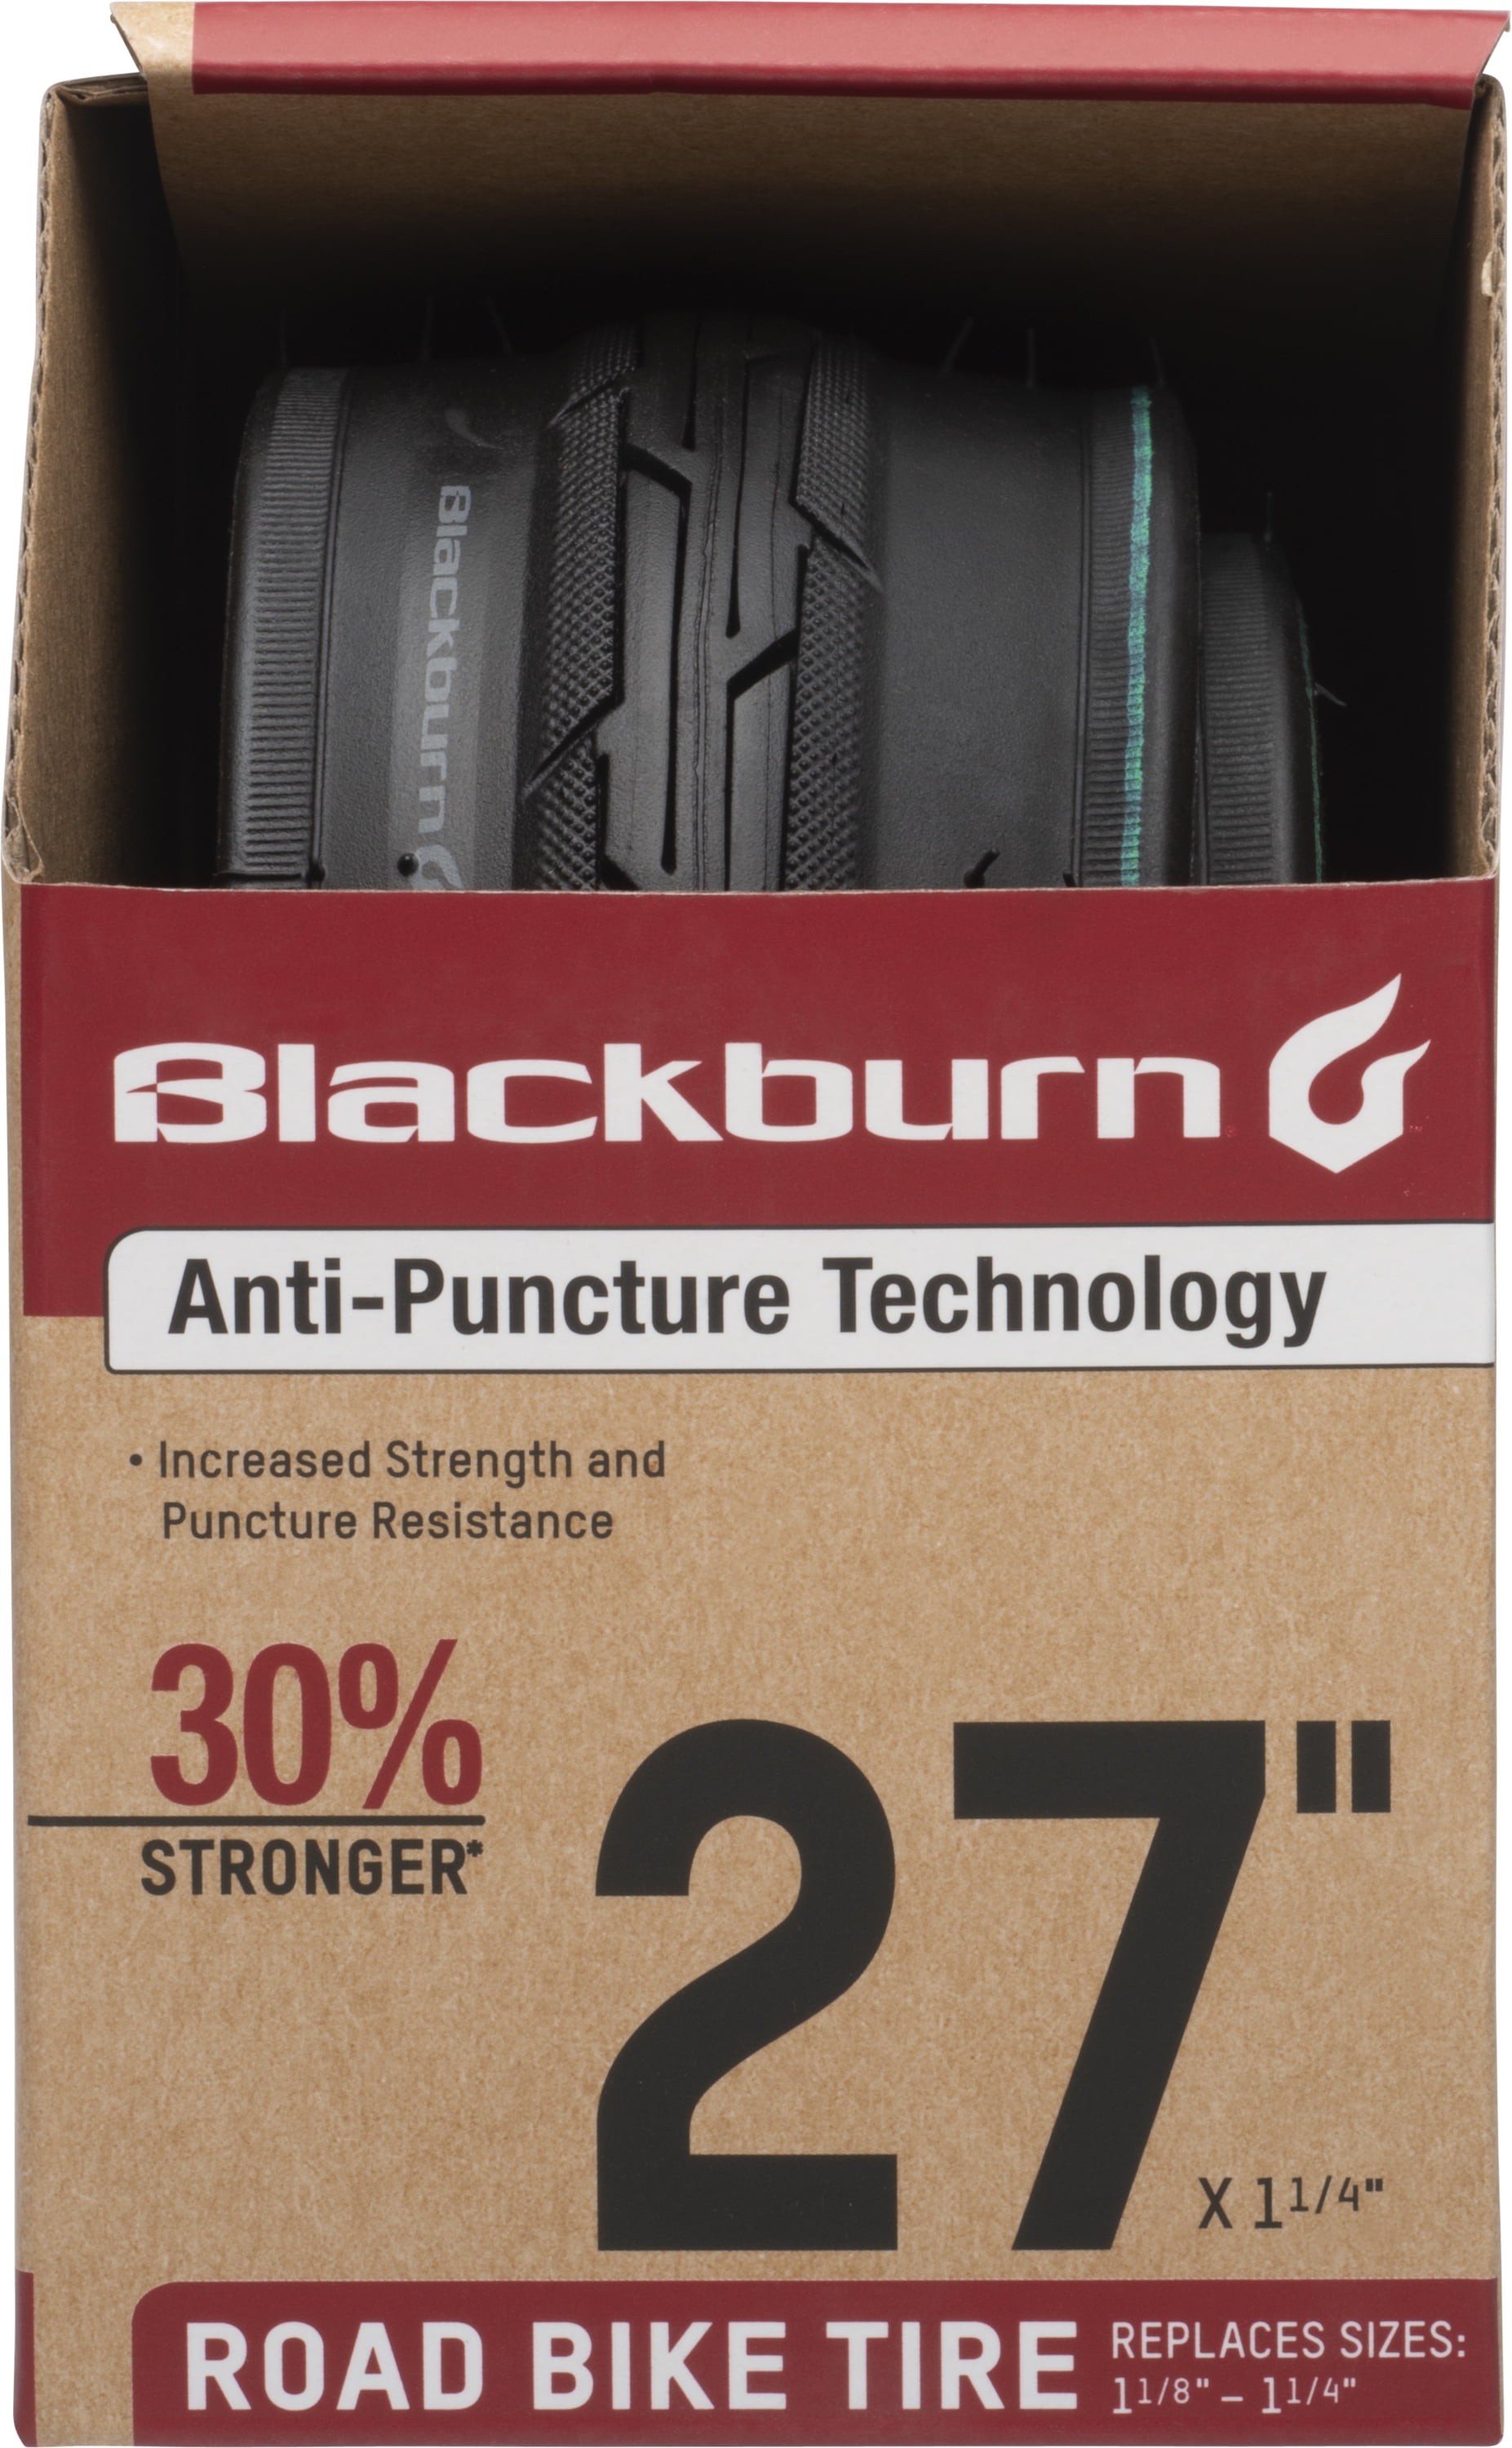 Blackburn Road Bike Tire, 27" x 1.25"